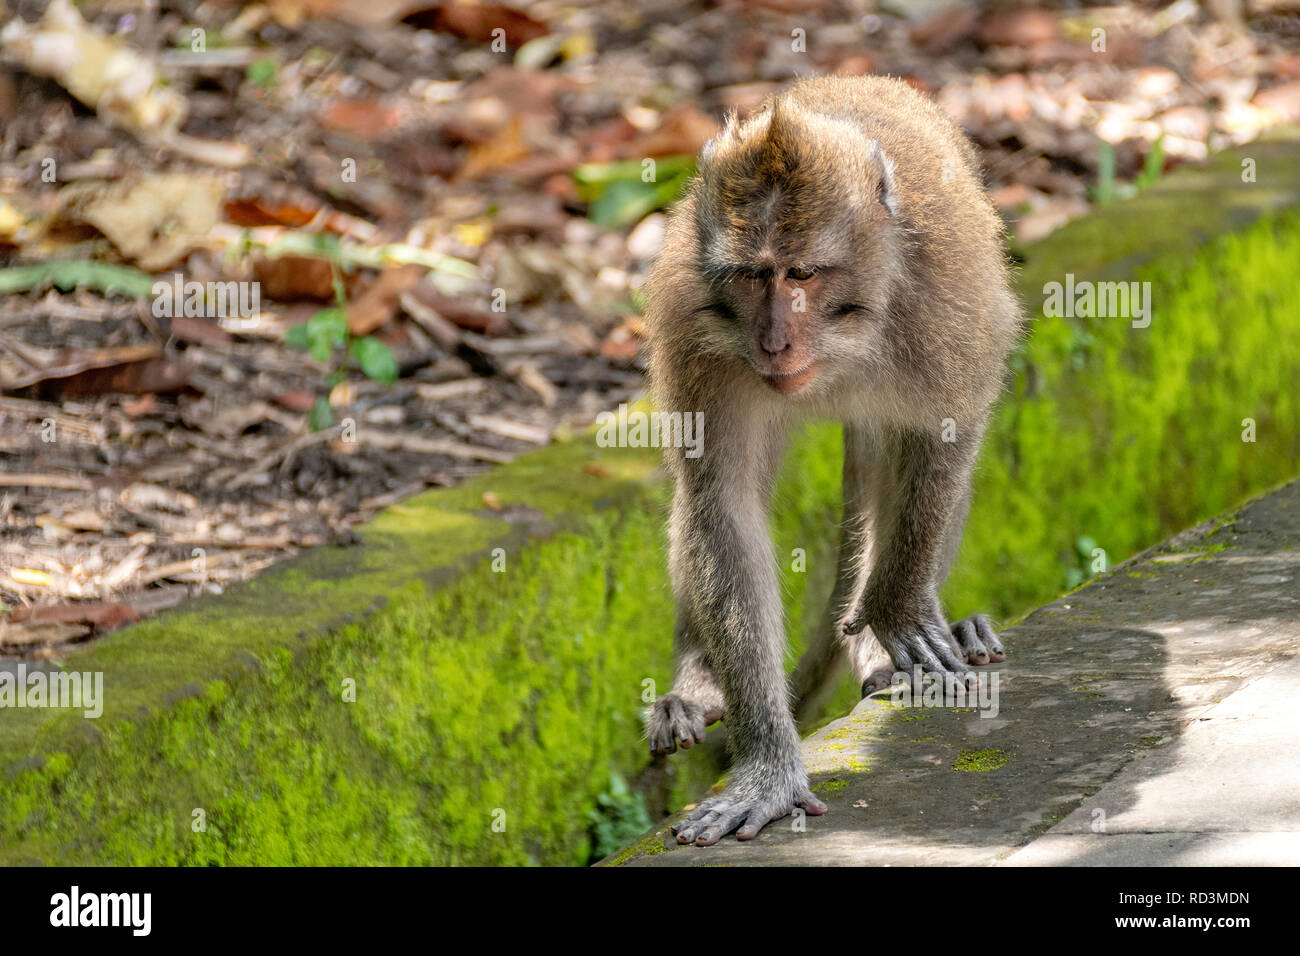 Balinese long-tailed monkey, Ubud Monkey Forest, Bali, Indonesia Stock Photo